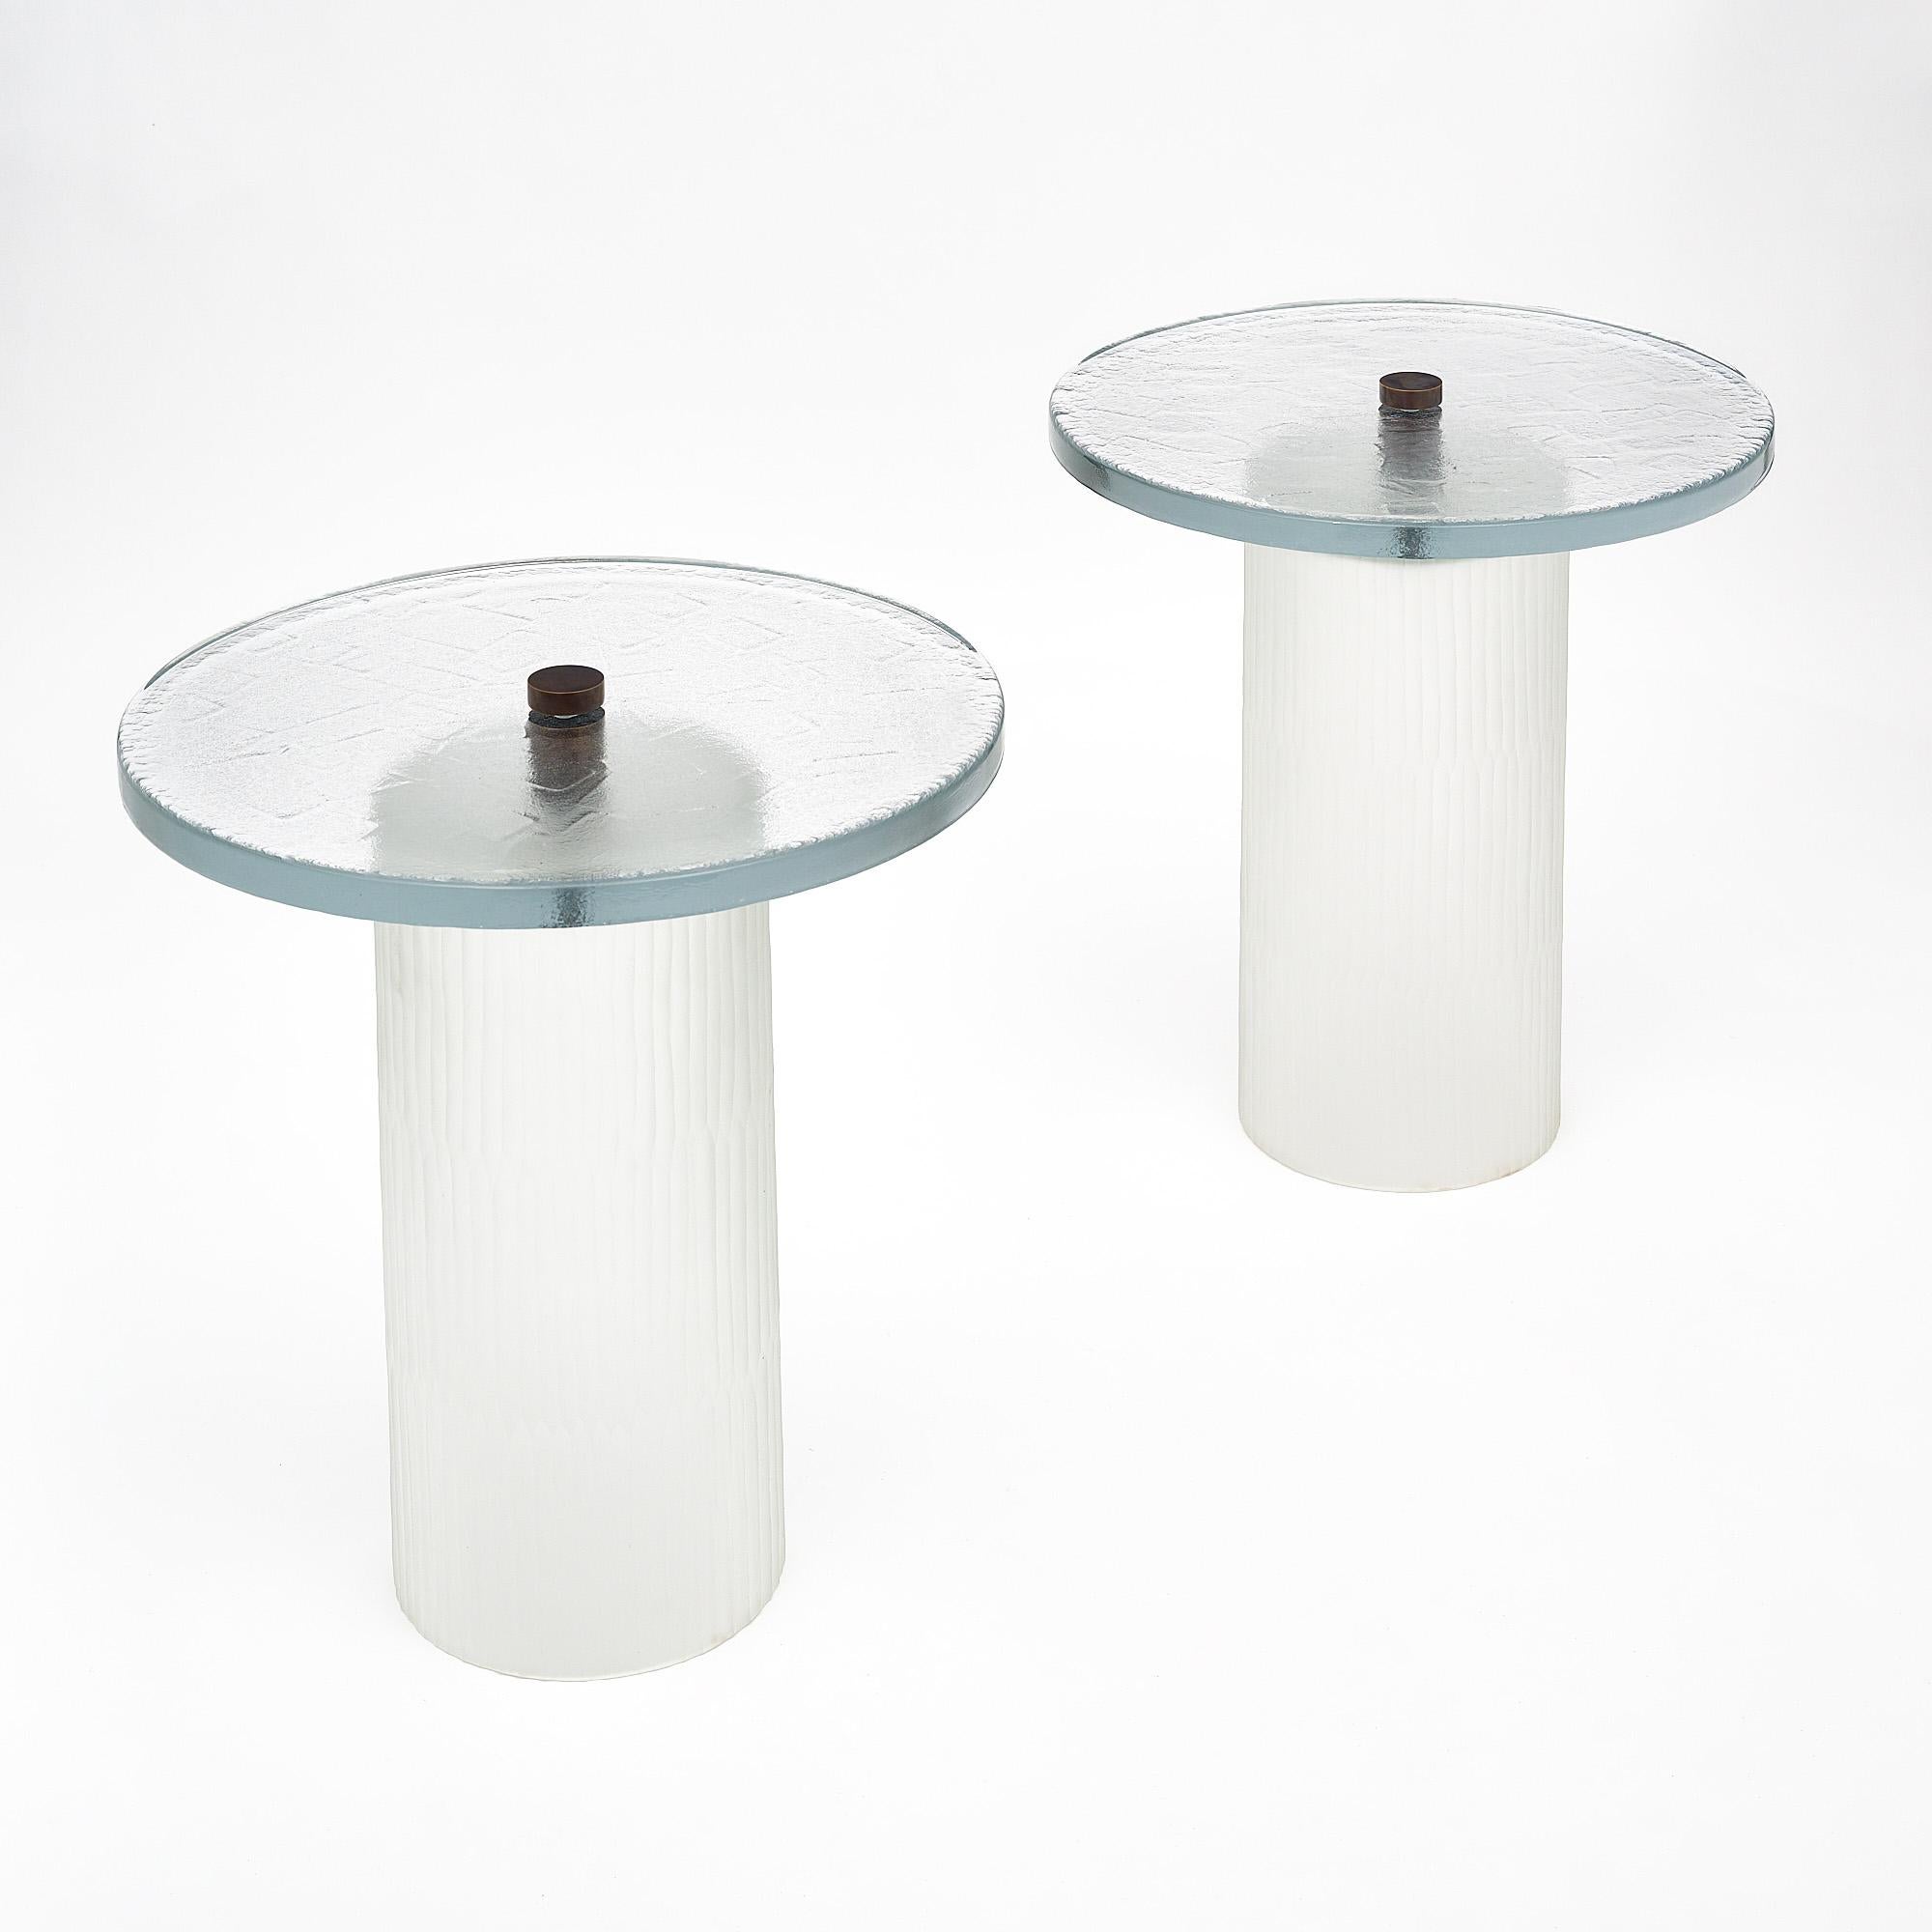 Paire de tables en verre de Murano, en verre épais transparent texturé et moulé. La partie supérieure est reliée à la base par un épi de faîtage en laiton massif. Le diamètre de la base est de 10